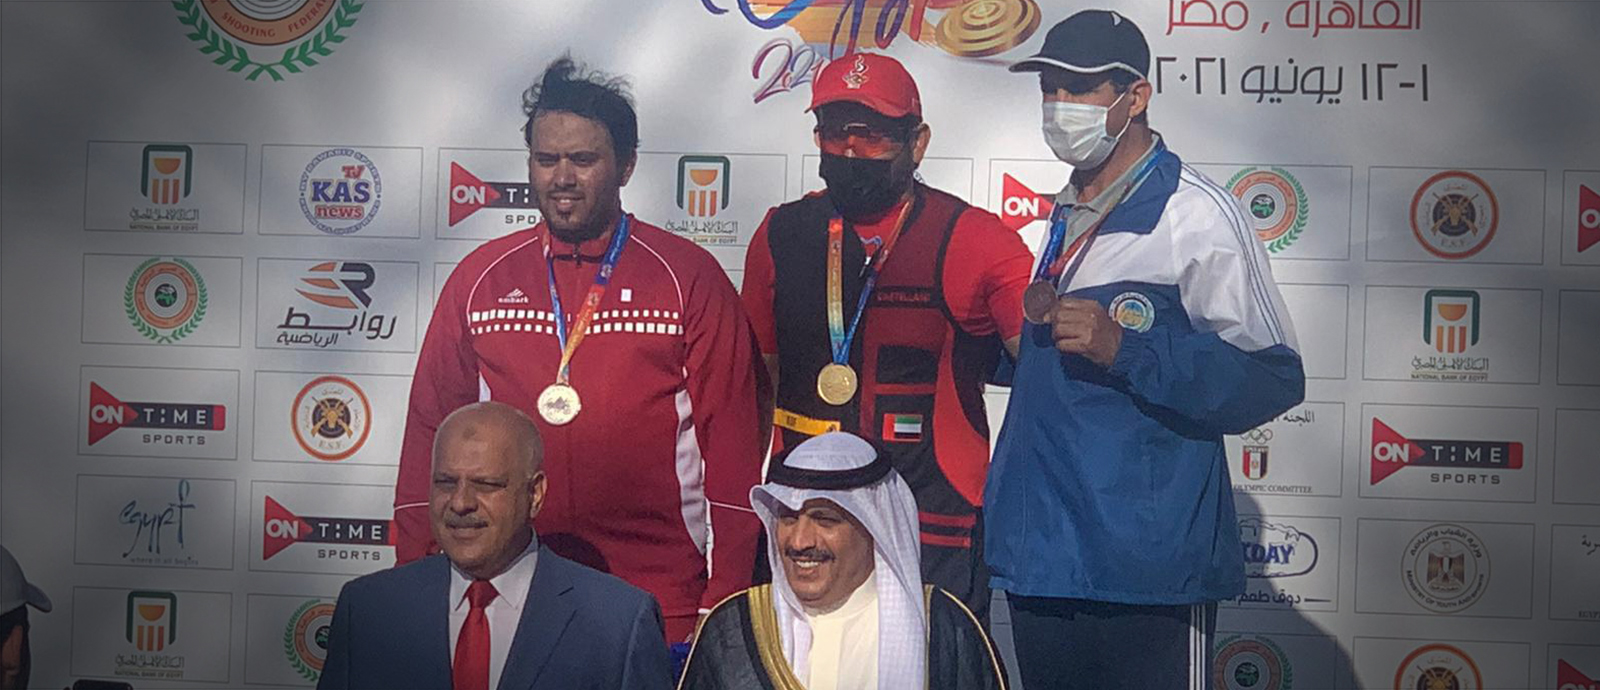 ذهبية وفضية للرماية القطرية في منافسات البطولة العربية بالقاهرة